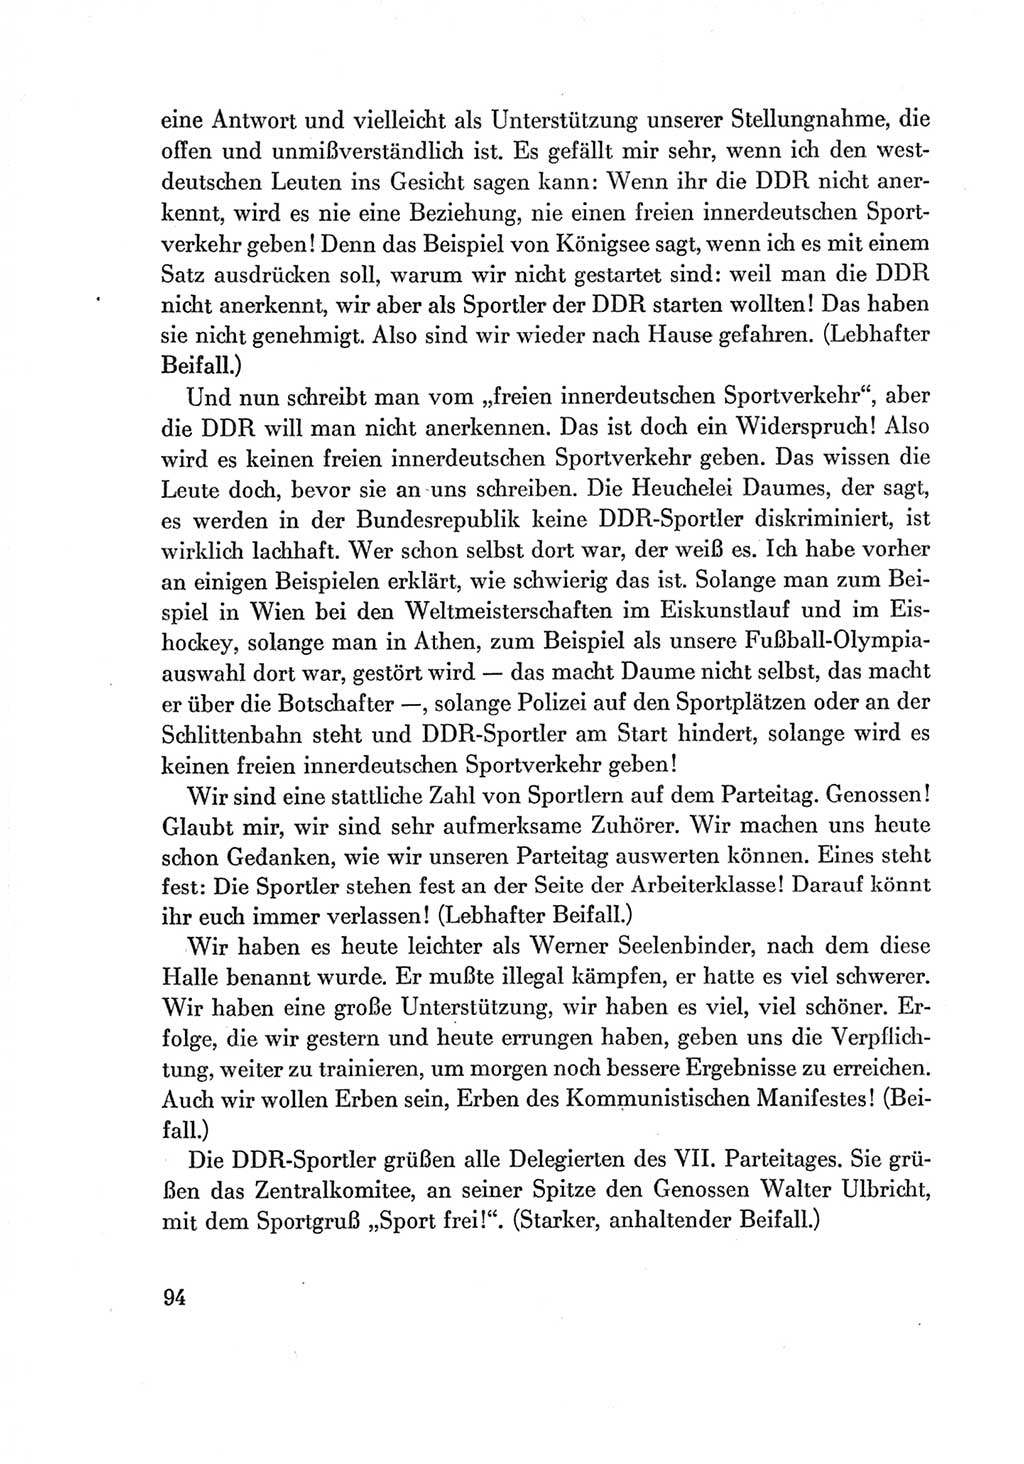 Protokoll der Verhandlungen des Ⅶ. Parteitages der Sozialistischen Einheitspartei Deutschlands (SED) [Deutsche Demokratische Republik (DDR)] 1967, Band Ⅱ, Seite 94 (Prot. Verh. Ⅶ. PT SED DDR 1967, Bd. Ⅱ, S. 94)